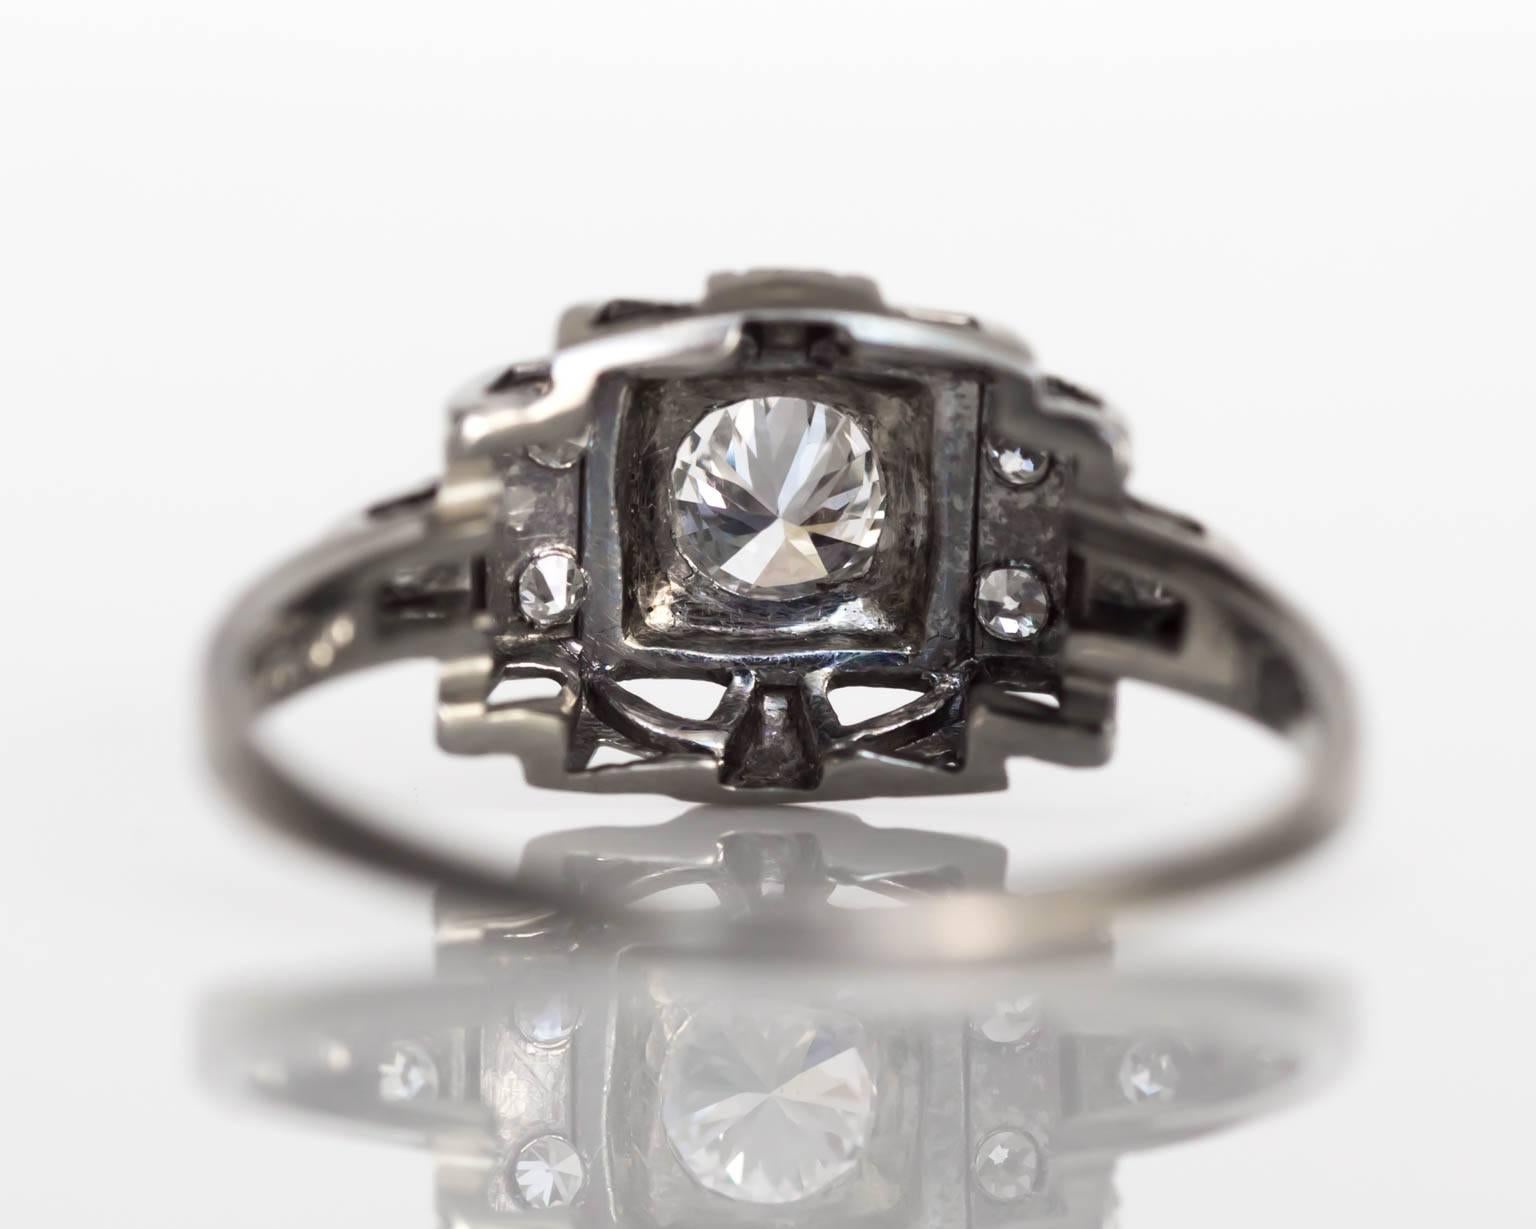 24 carat engagement ring